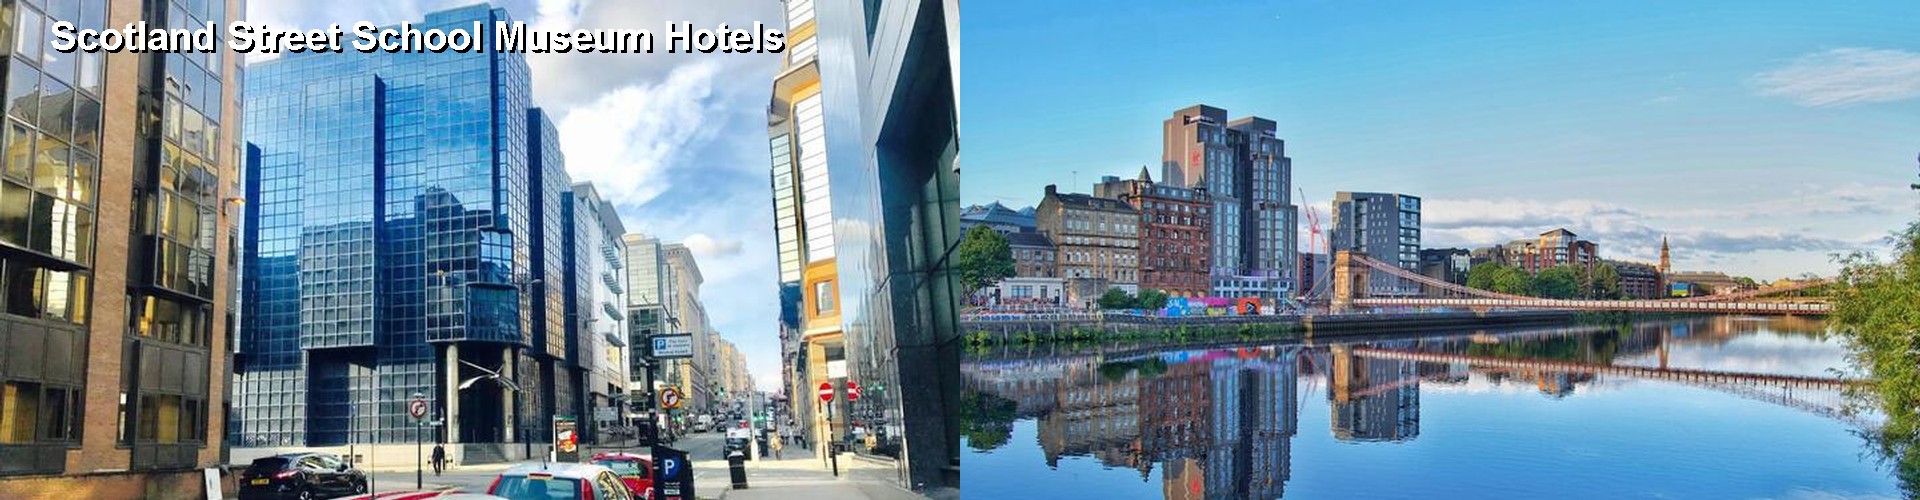 5 Best Hotels near Scotland Street School Museum